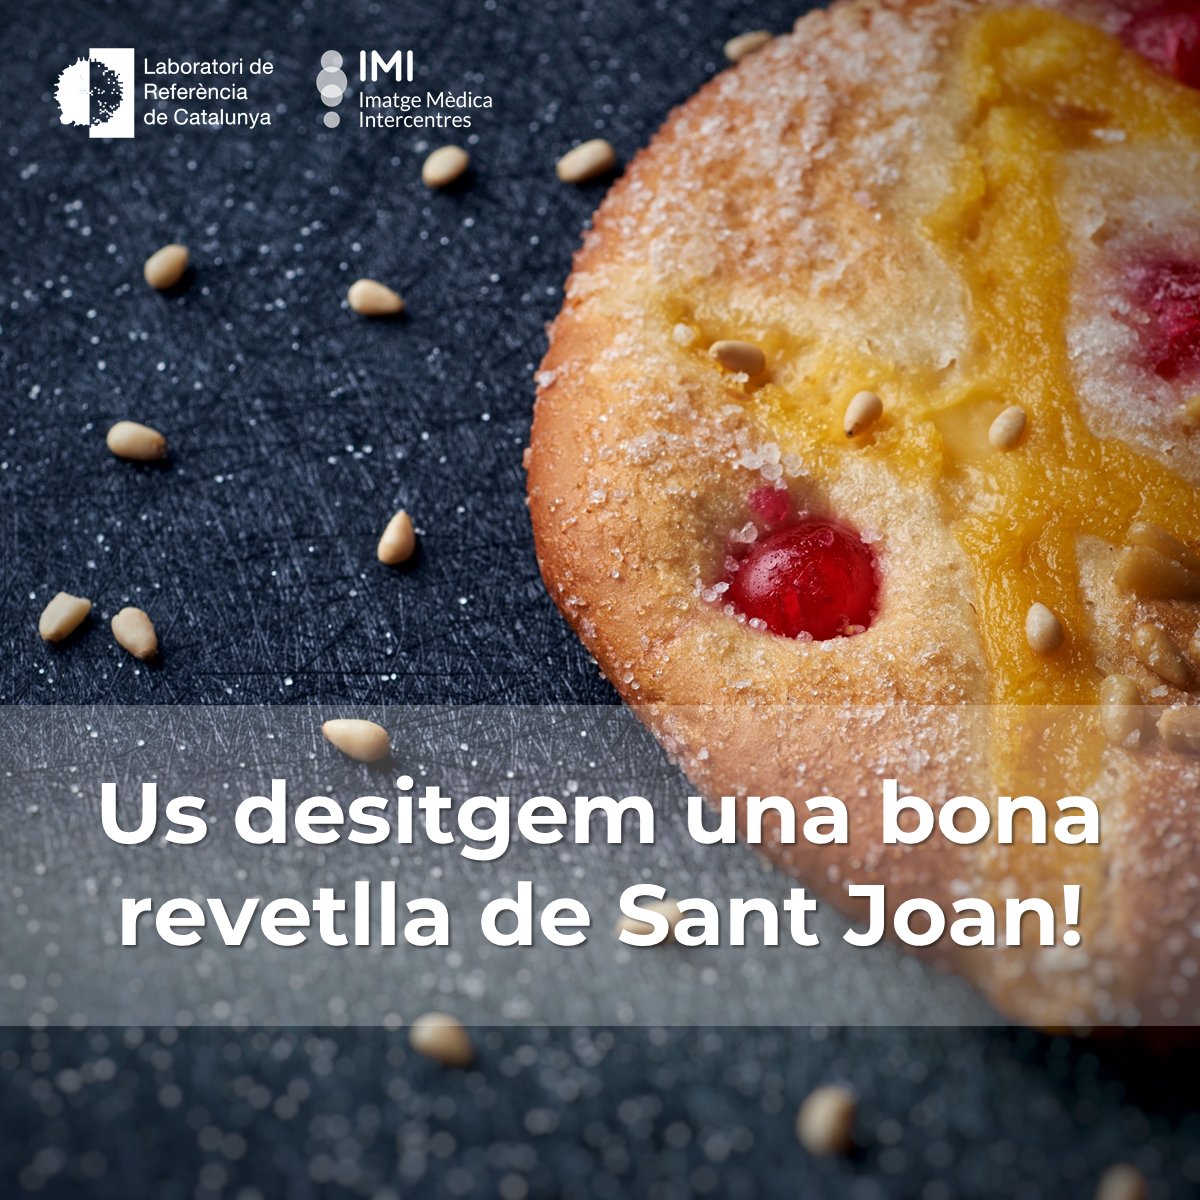 Us desitgem una bona revetlla de Sant Joan!